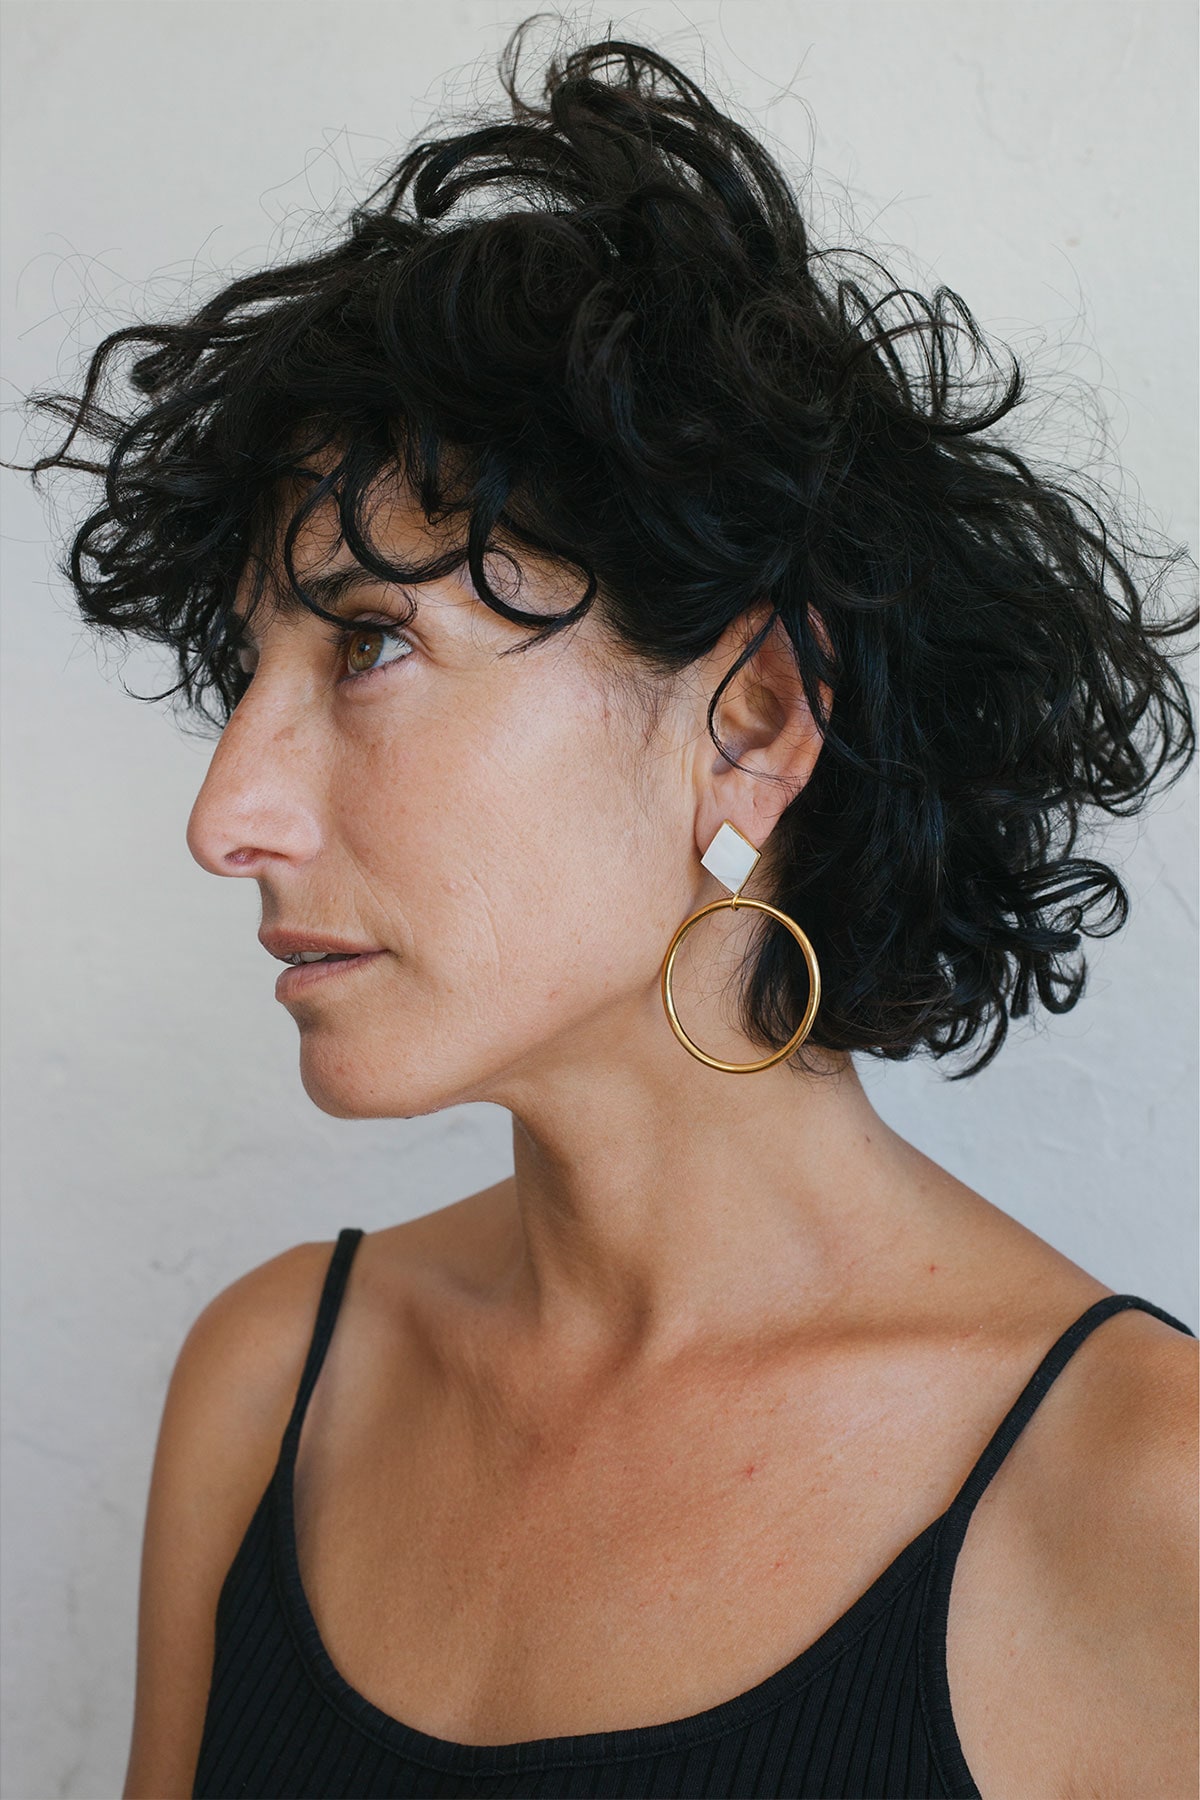 Rhombus Mother-of-Pearl Moon Earrings in venus penajewels